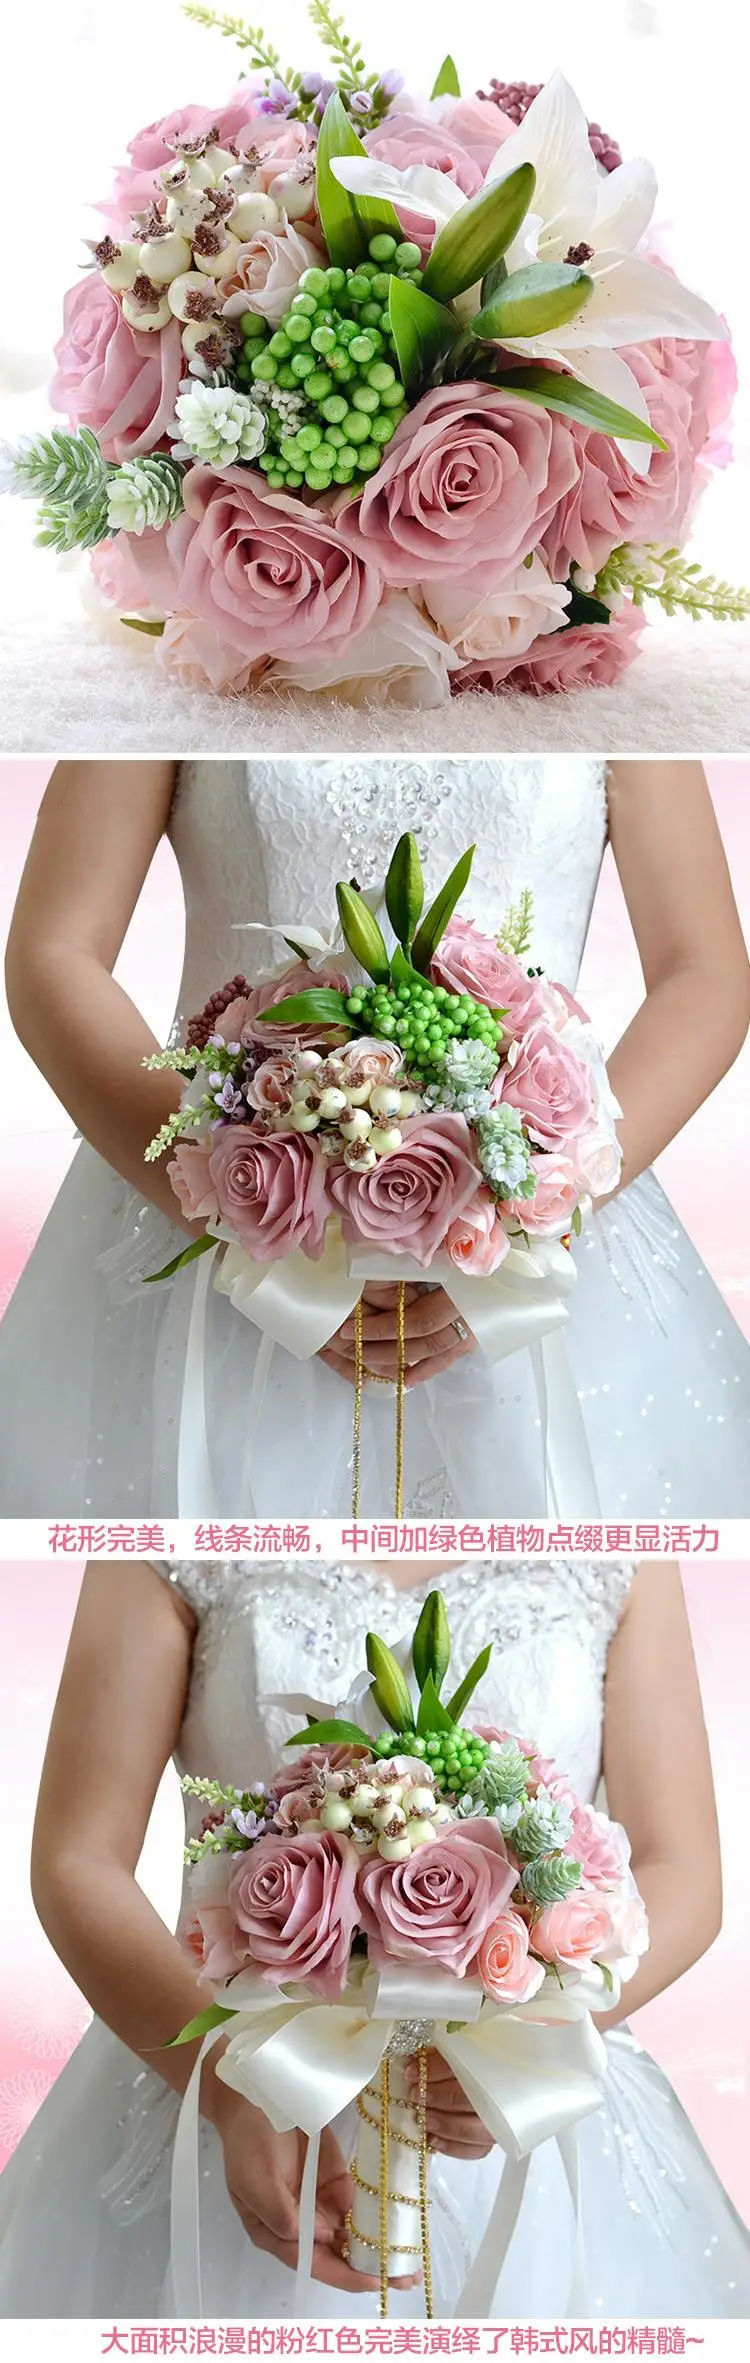 Розовый персик искусственная ткань розетка цветы Свадебные букеты романтическая свадебная брошь ramo de novia Свадебные аксессуары